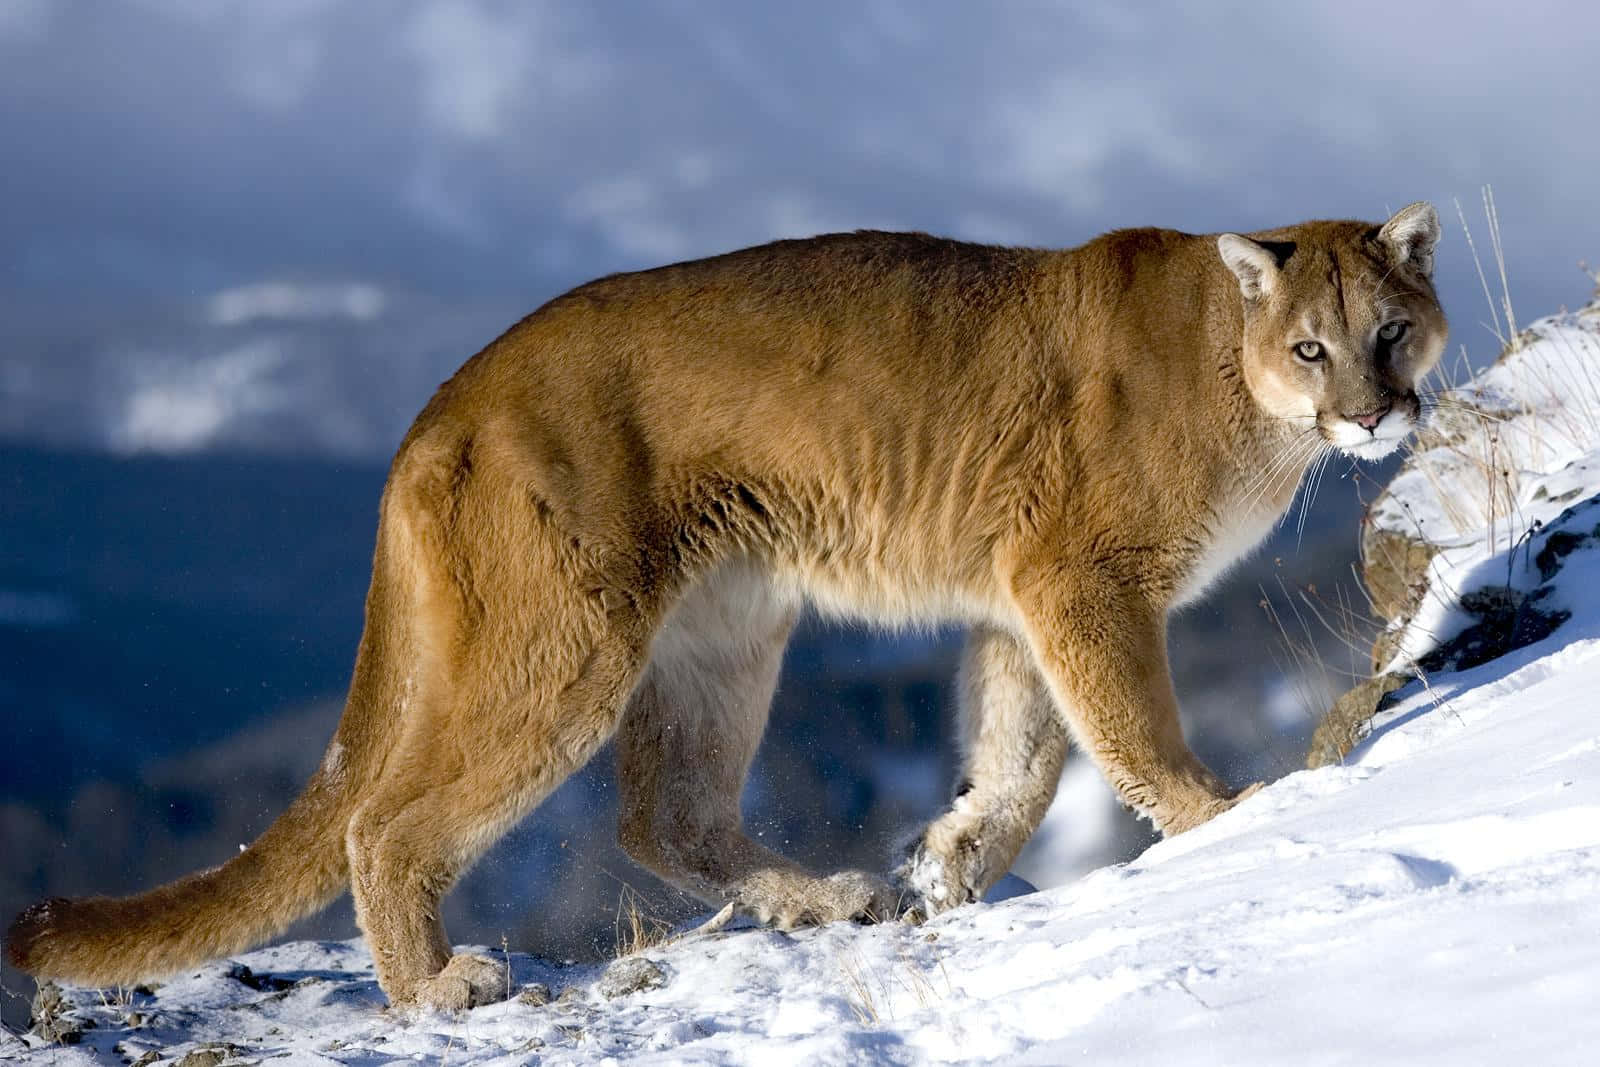 Vildadjur Bild Av En Puma Som Går På Snö